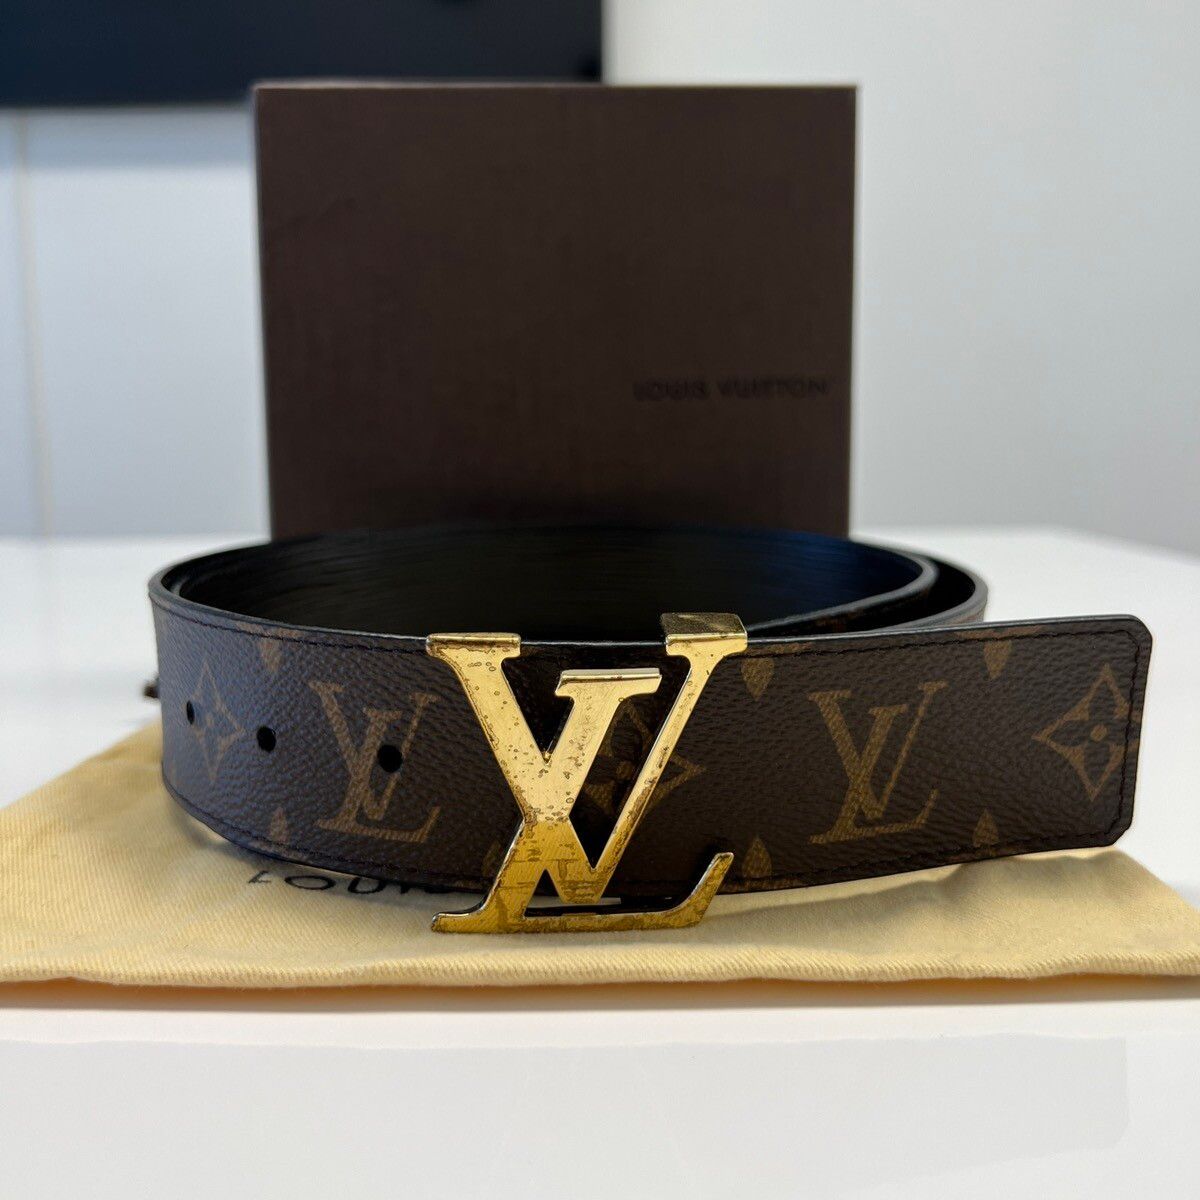 Louis Vuitton M0341 Men Belt 100 x 4 cm